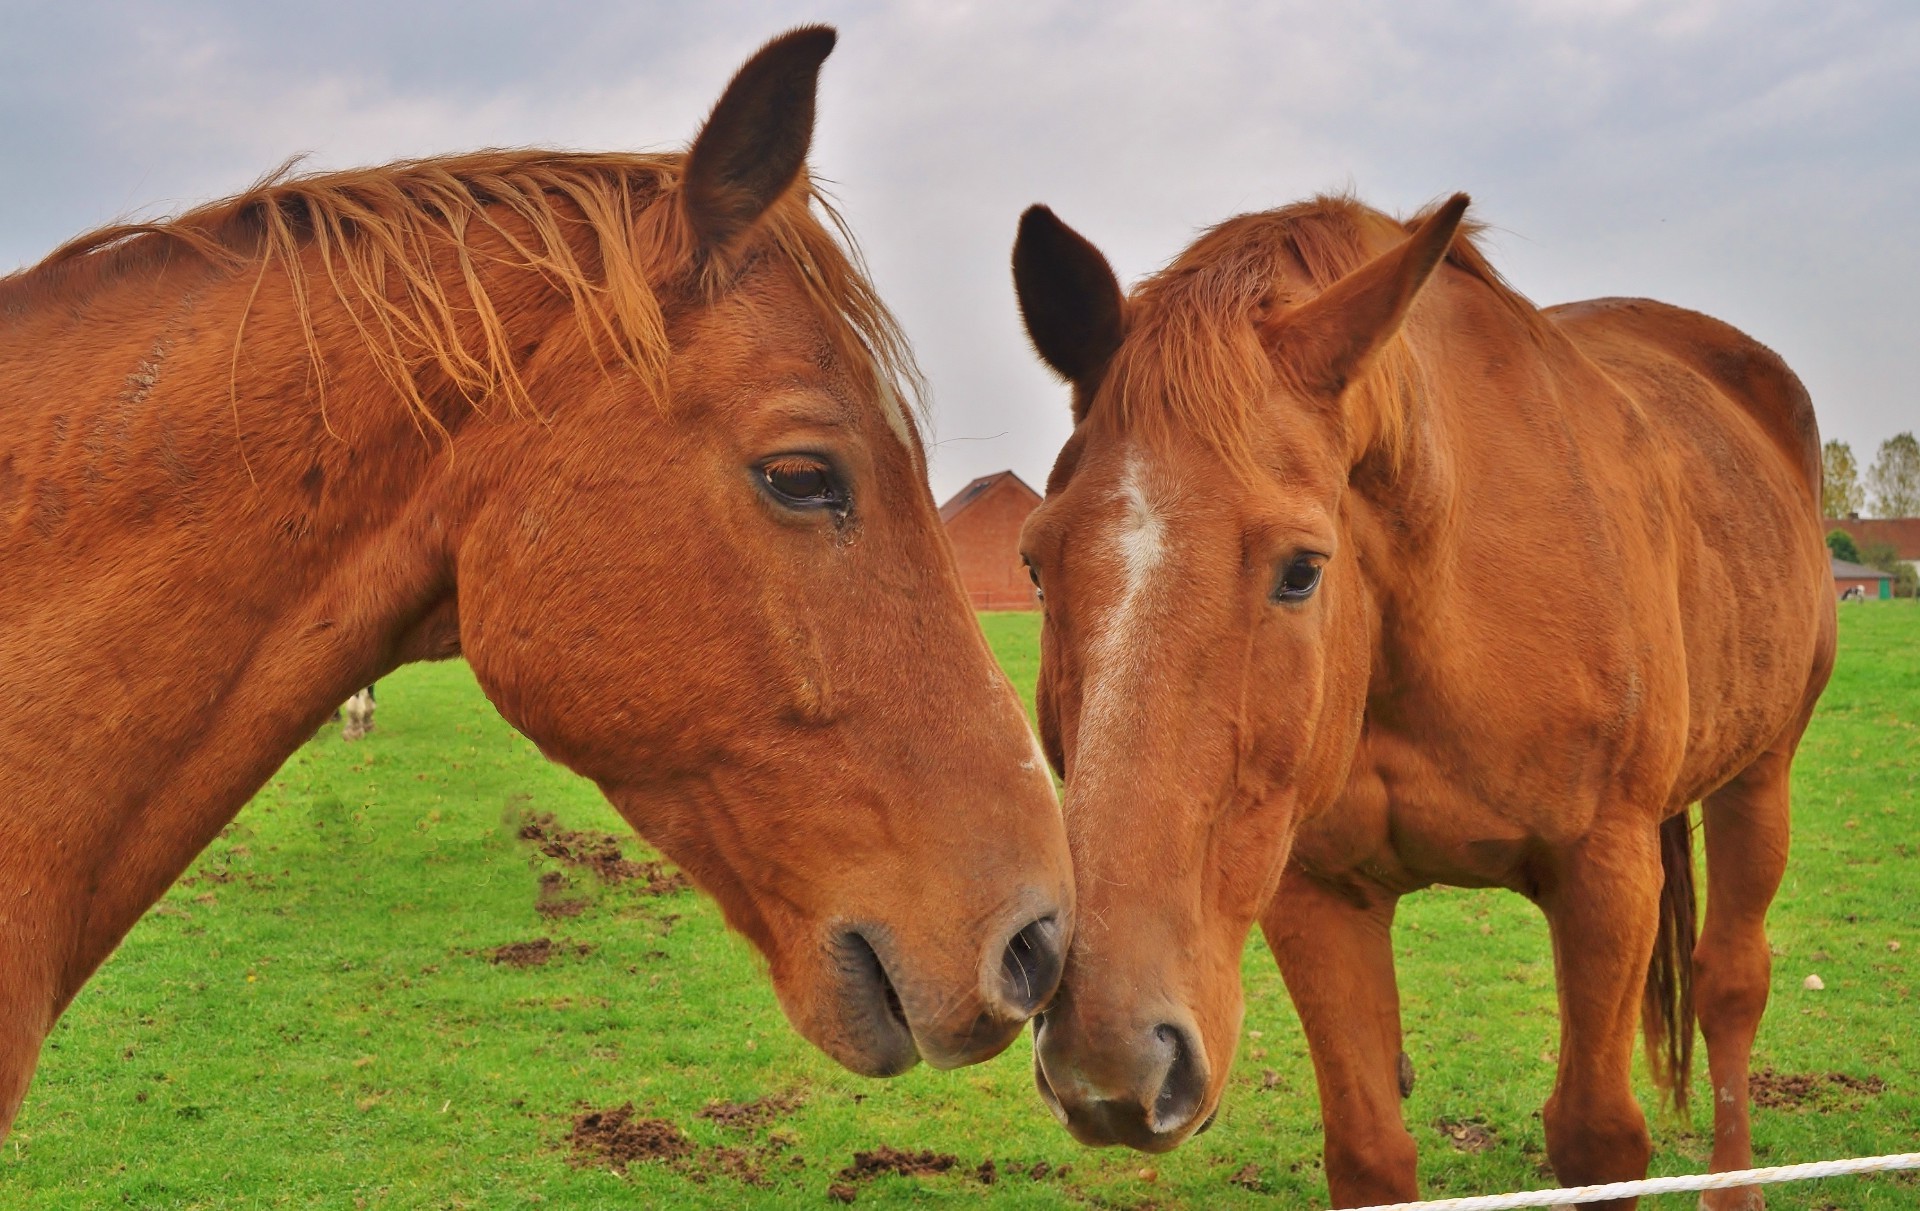 лошади млекопитающее маре пастбище лошадь конница животное ферма сенокос трава жеребец поле живыми животными мане сельское хозяйство коневодство конный пастбища скаковая лошадь